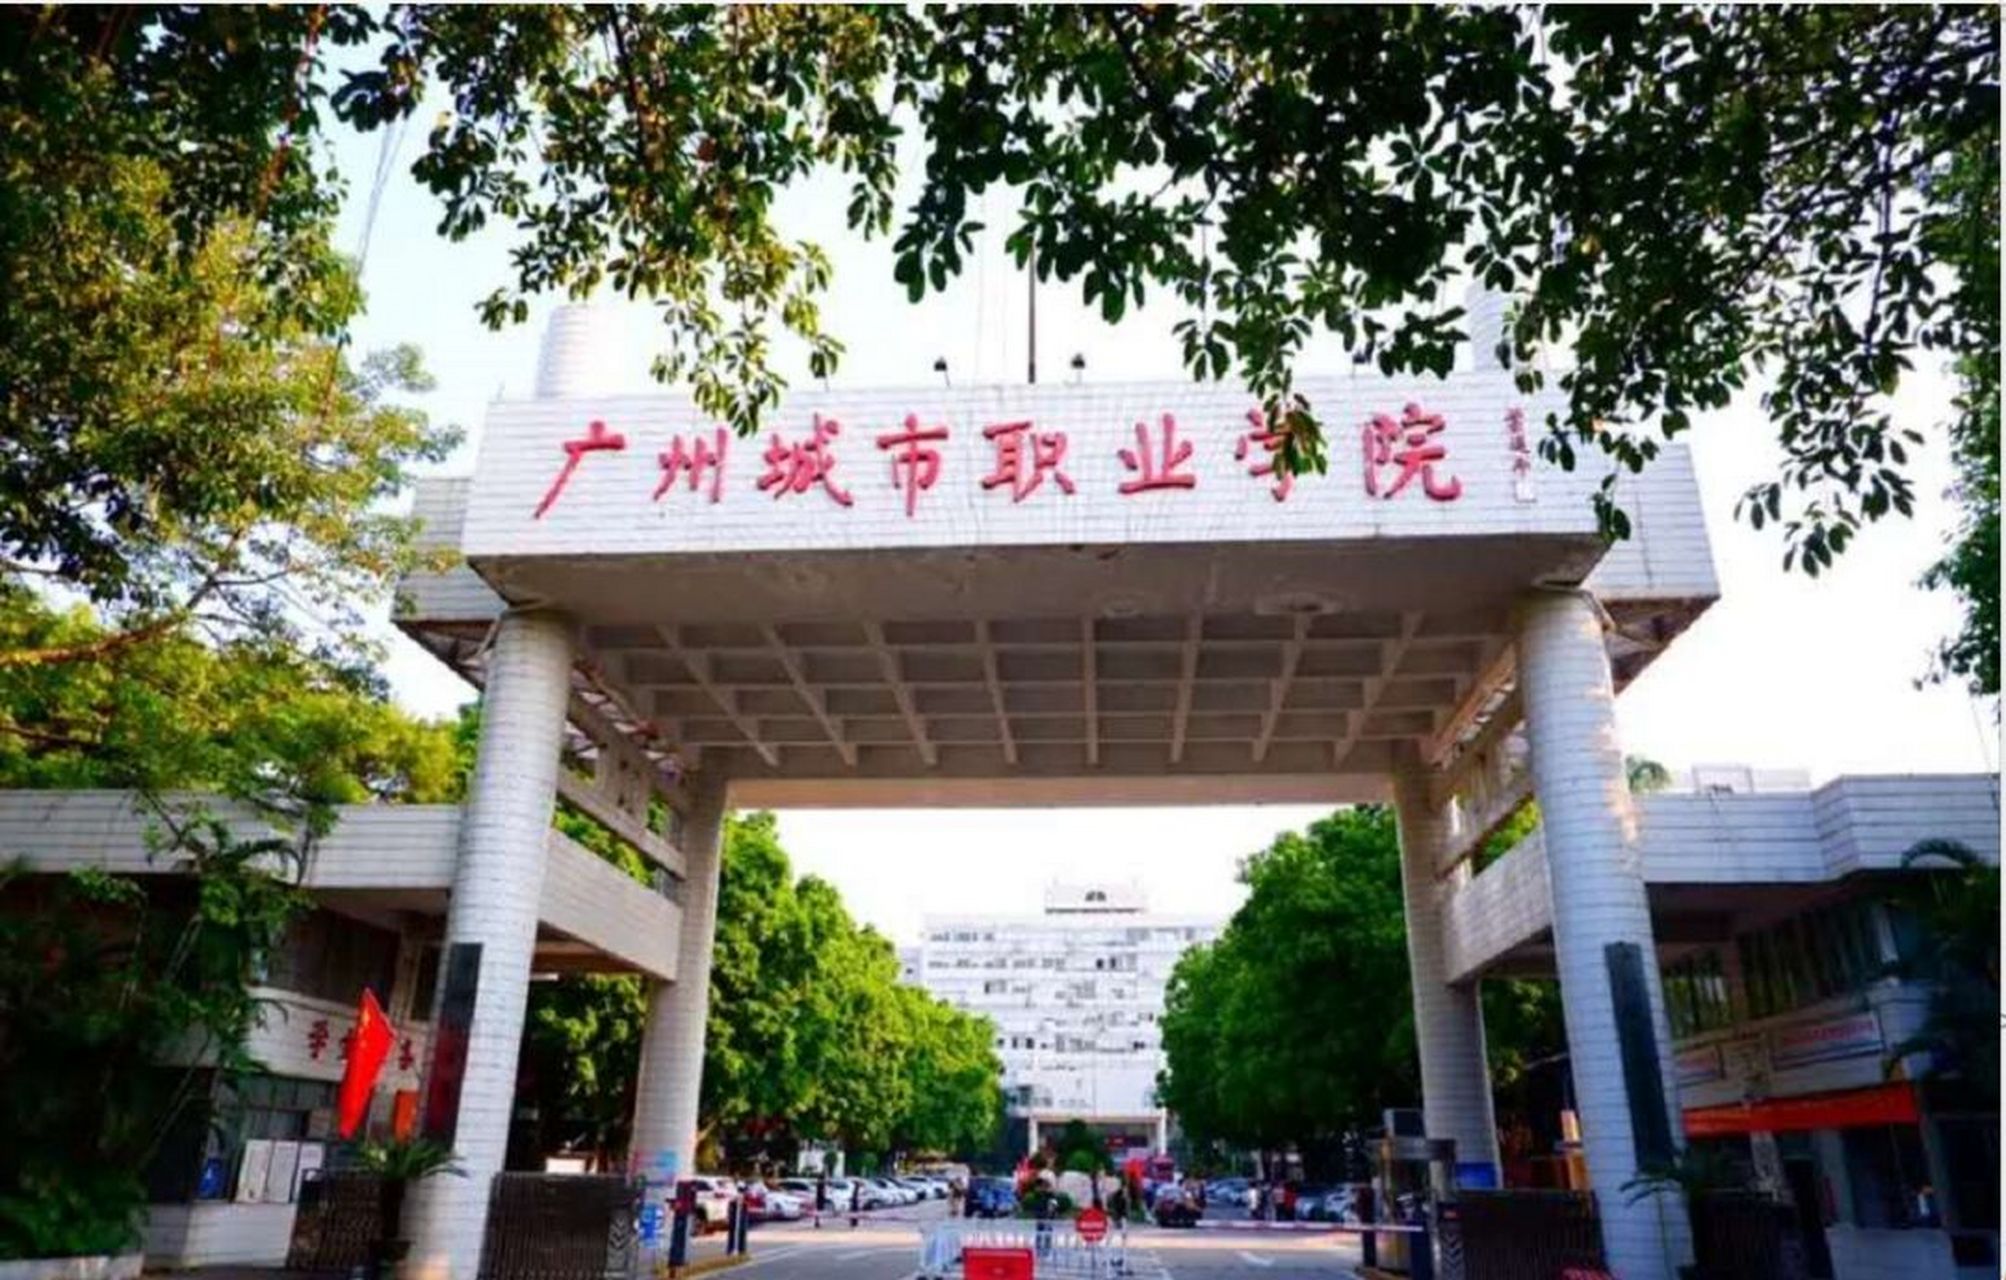 广州城市职业技术学院图片